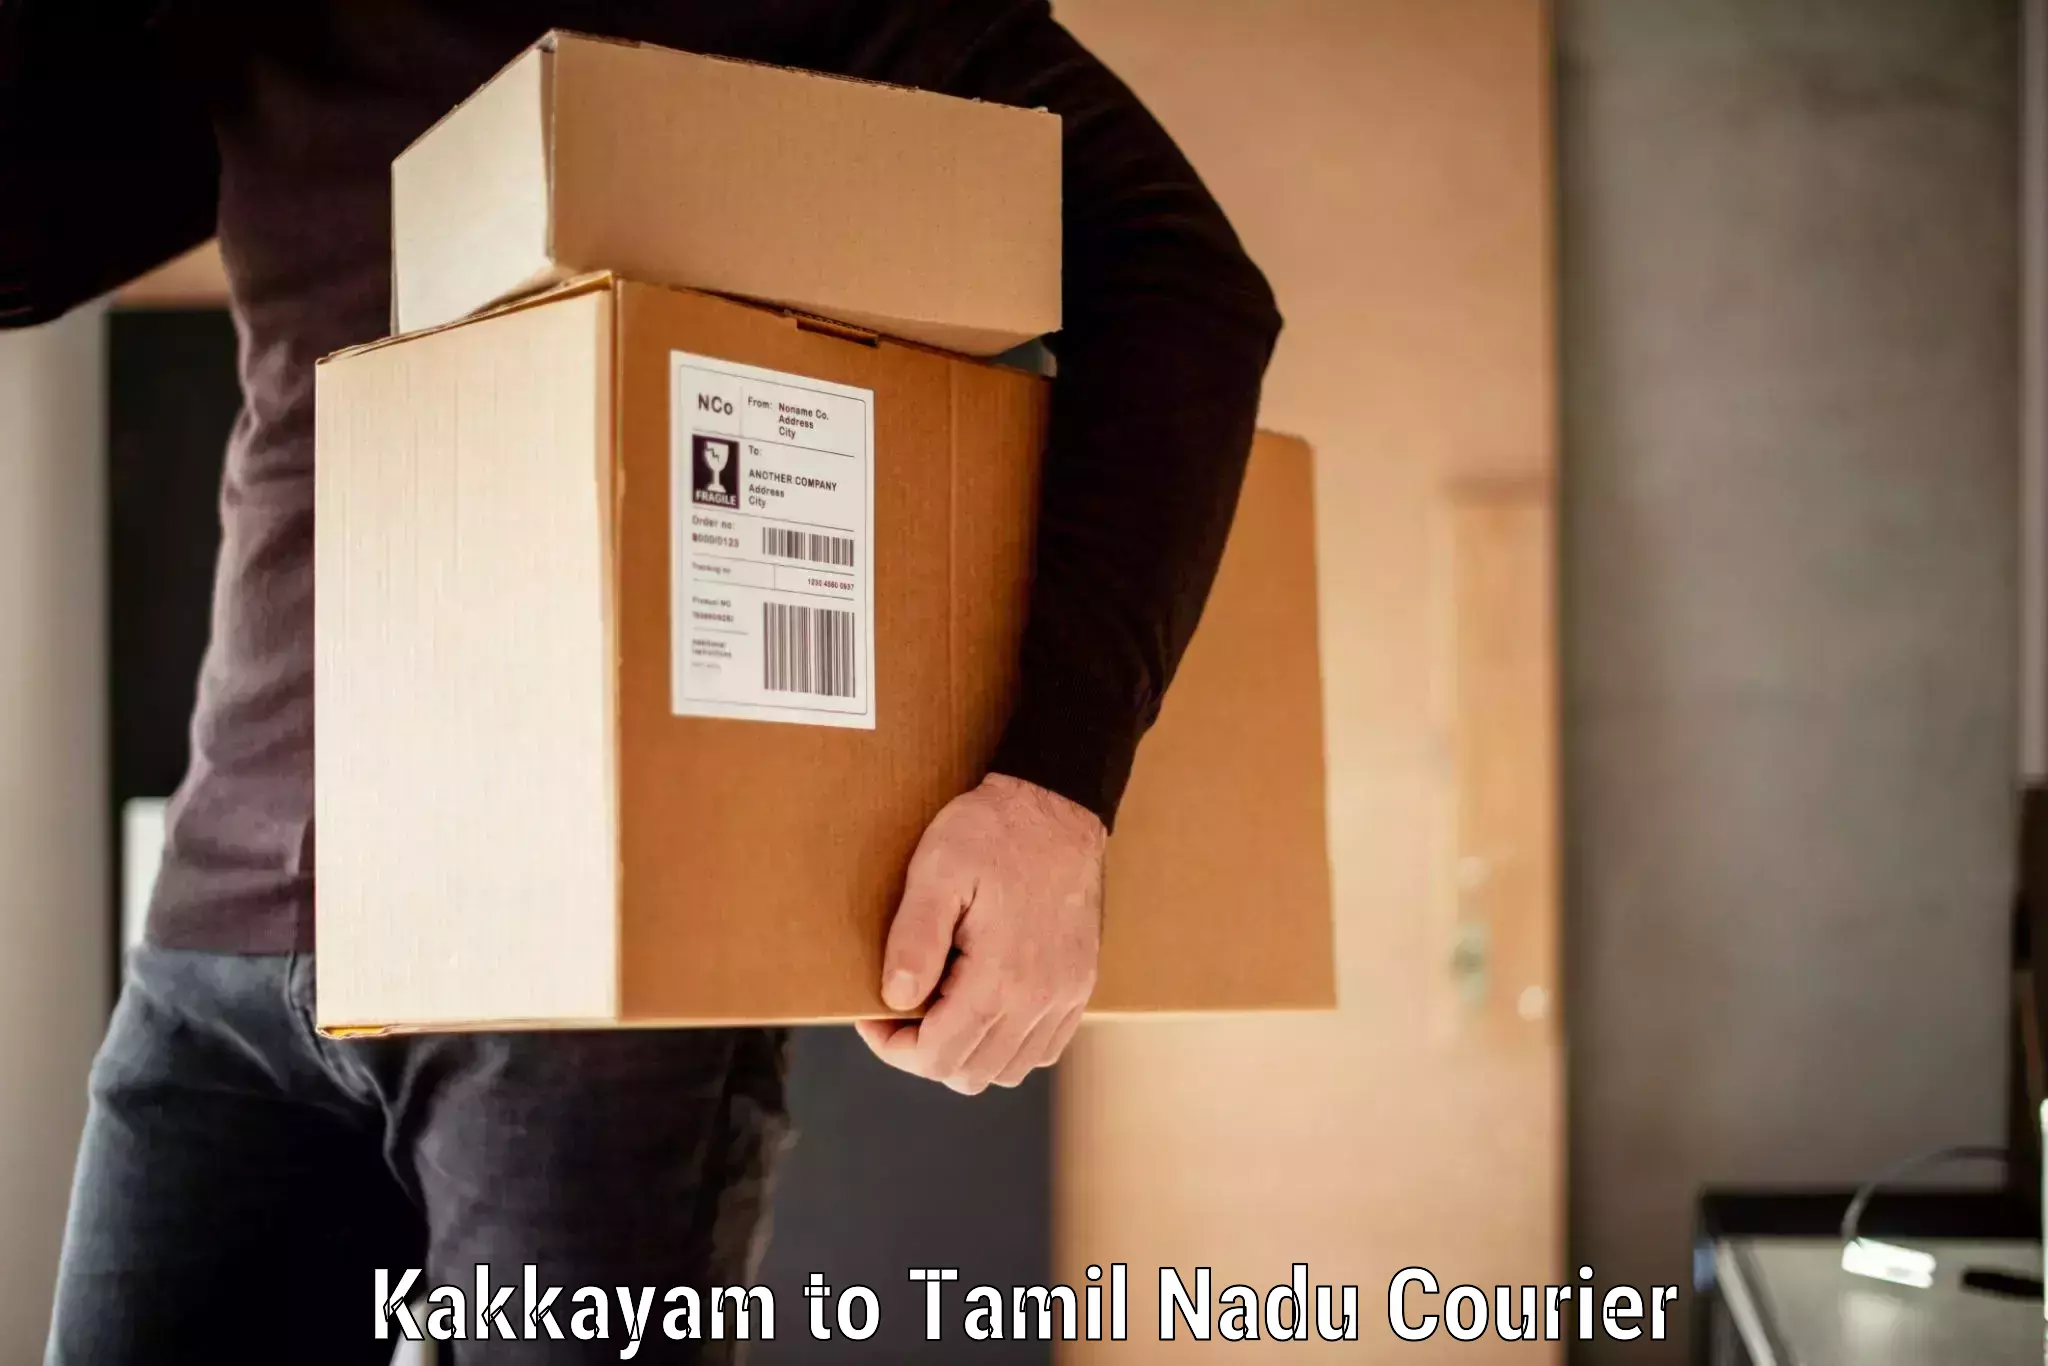 Baggage shipping logistics Kakkayam to Karur